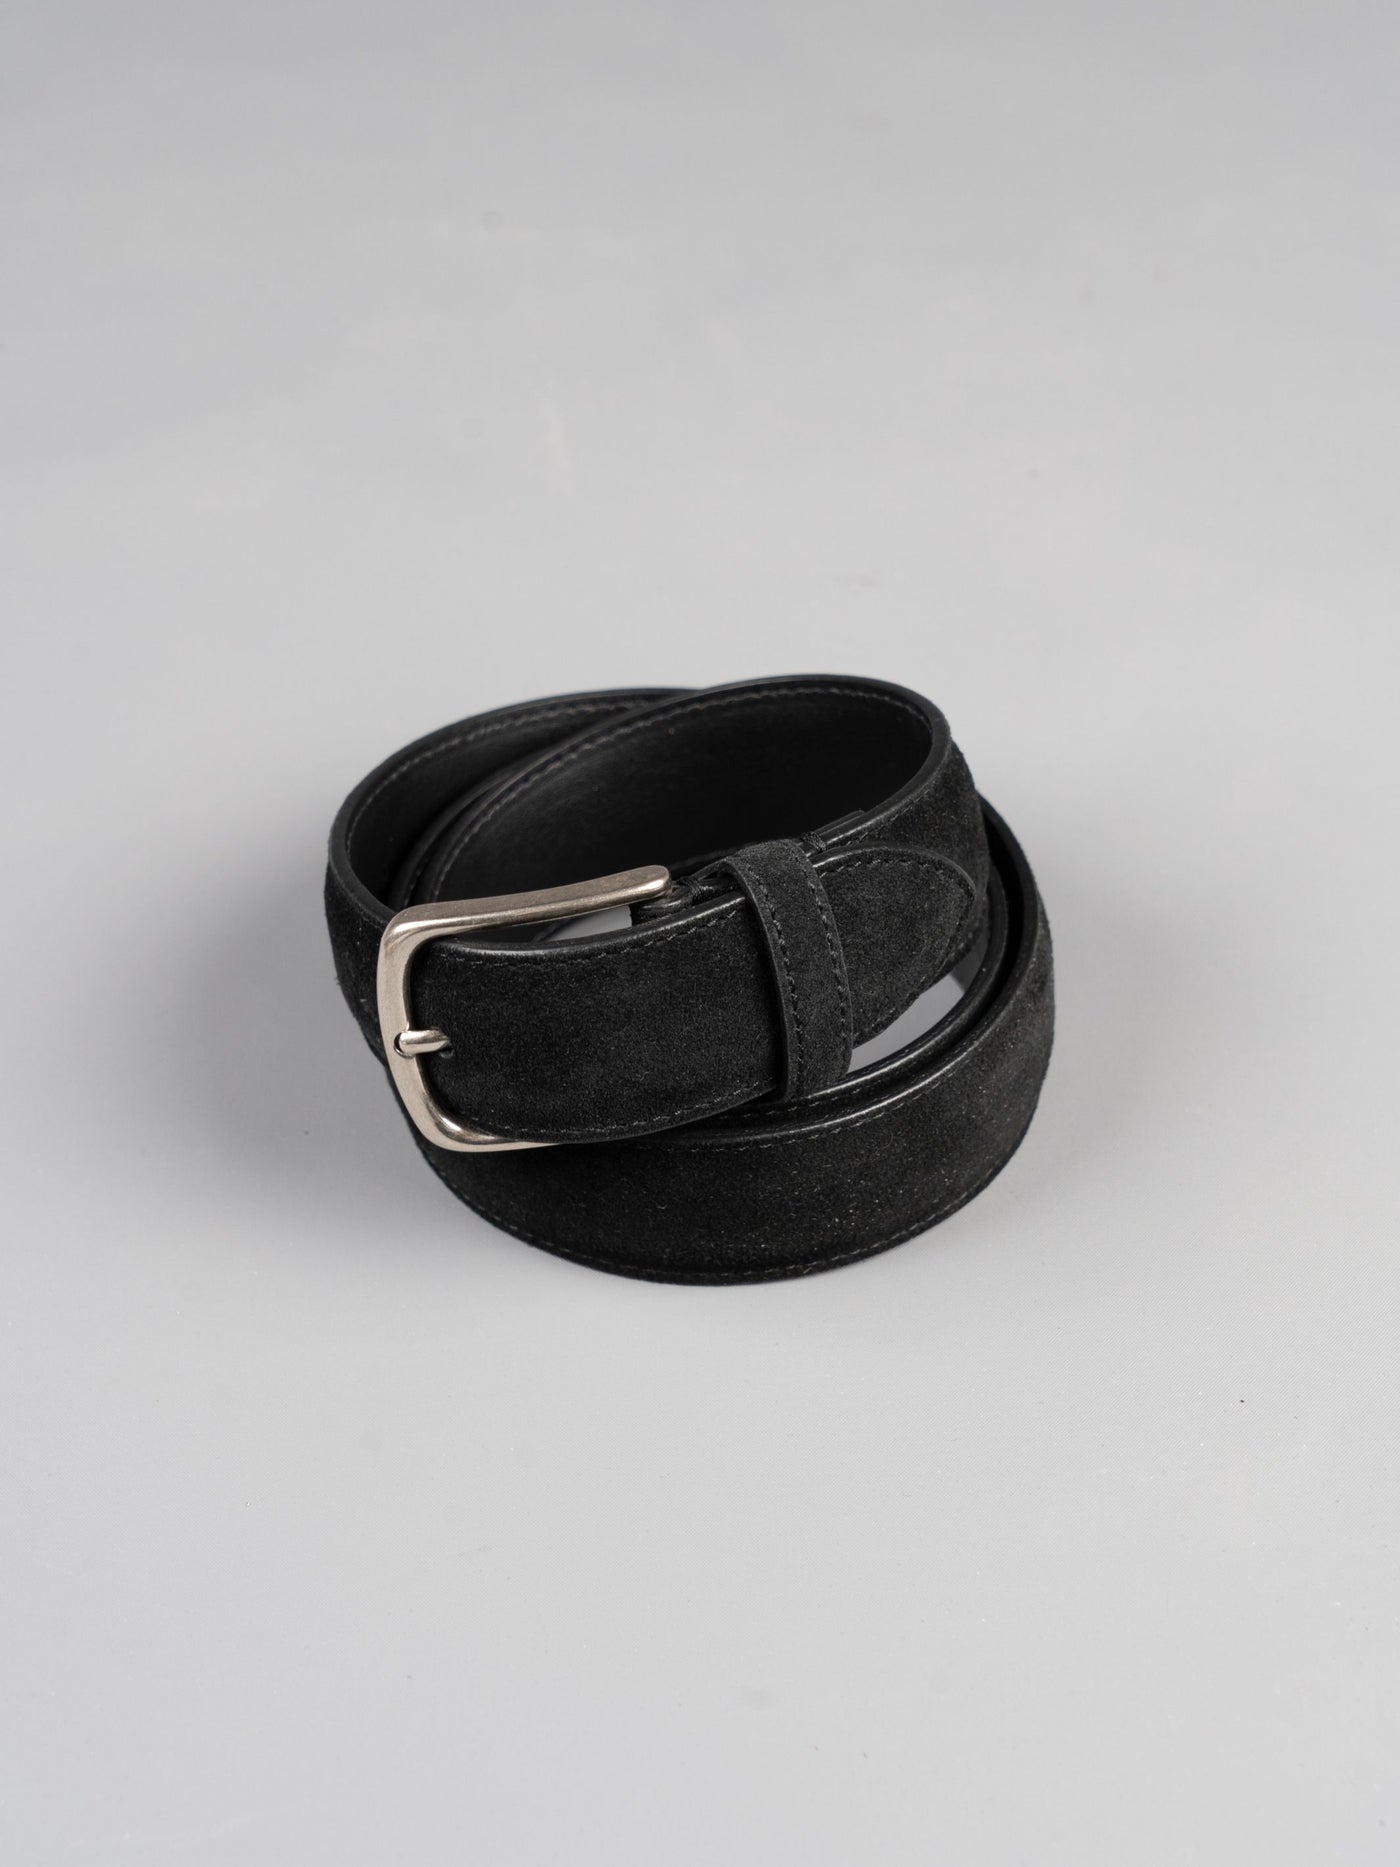 Basic Suede Leather Belt - Sort